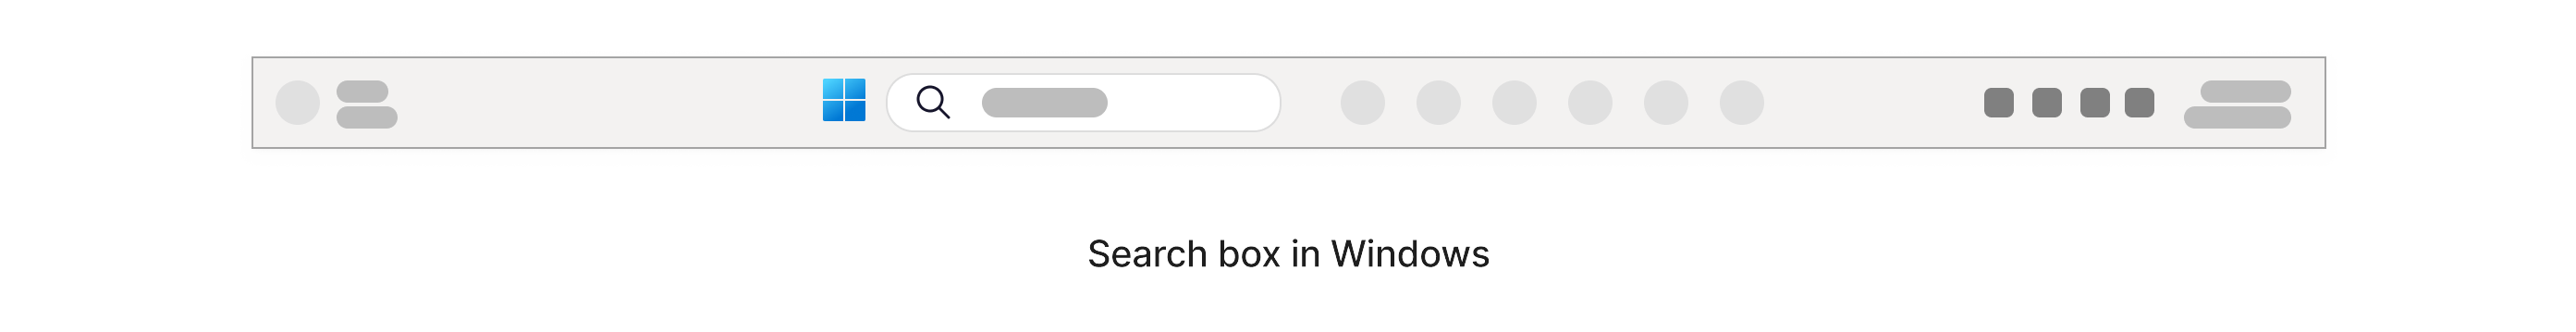 תיבת חיפוש עם סמל 'מגדל' בתוכה, הממוקמת בשורת המשימות של Windows בחלק התחתון של המסך.